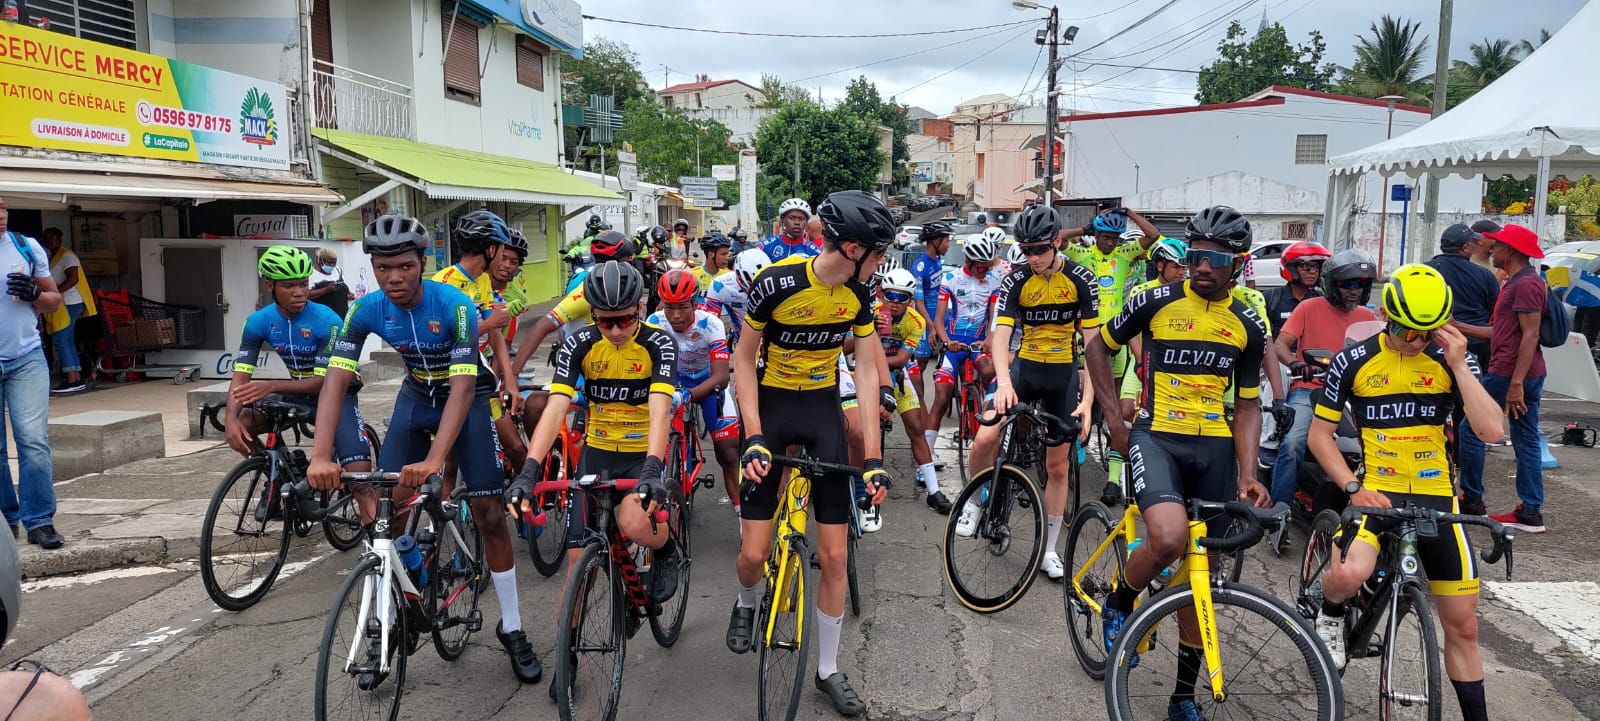     50 coureurs au départ du 16e tour cycliste junior de Martinique

